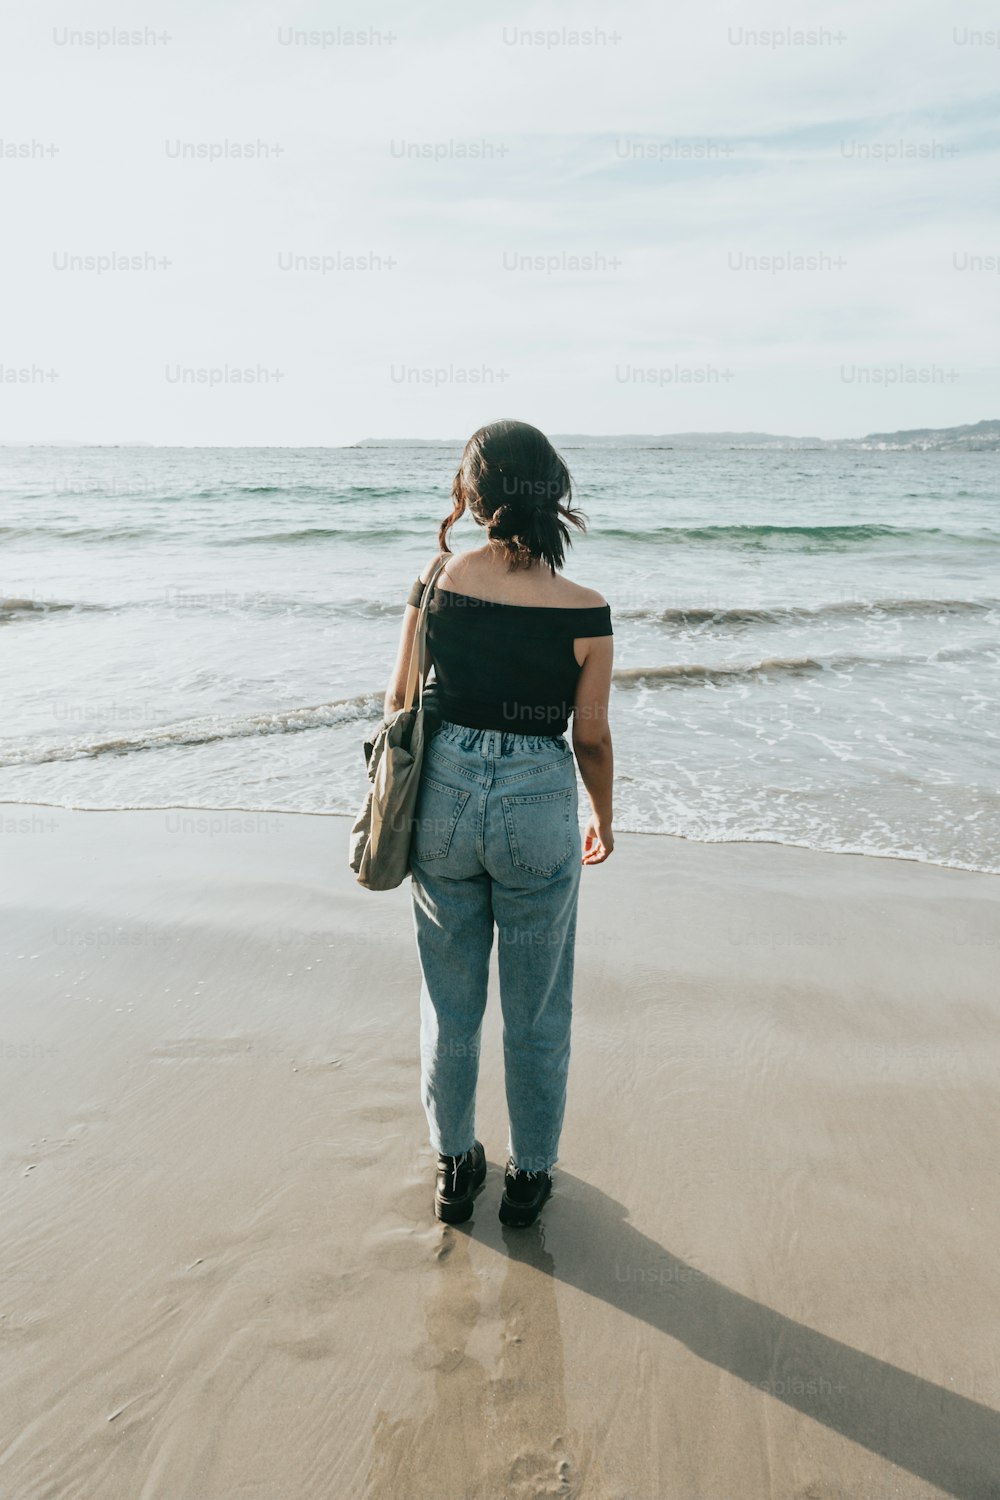 Una donna in piedi su una spiaggia vicino all'oceano